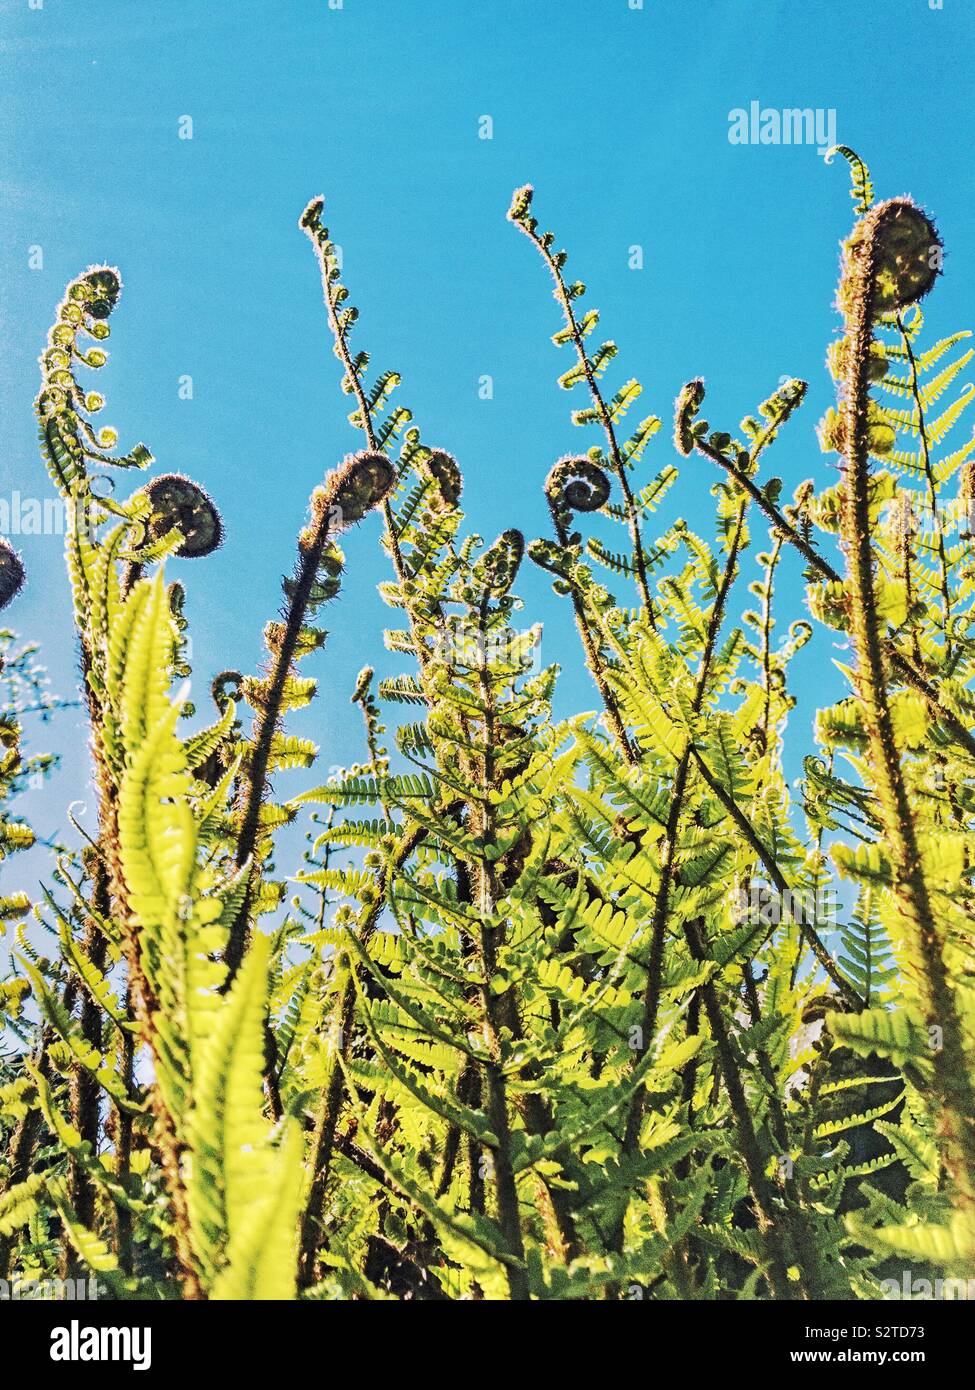 Unfurling fern fronds against blue sky. Stock Photo